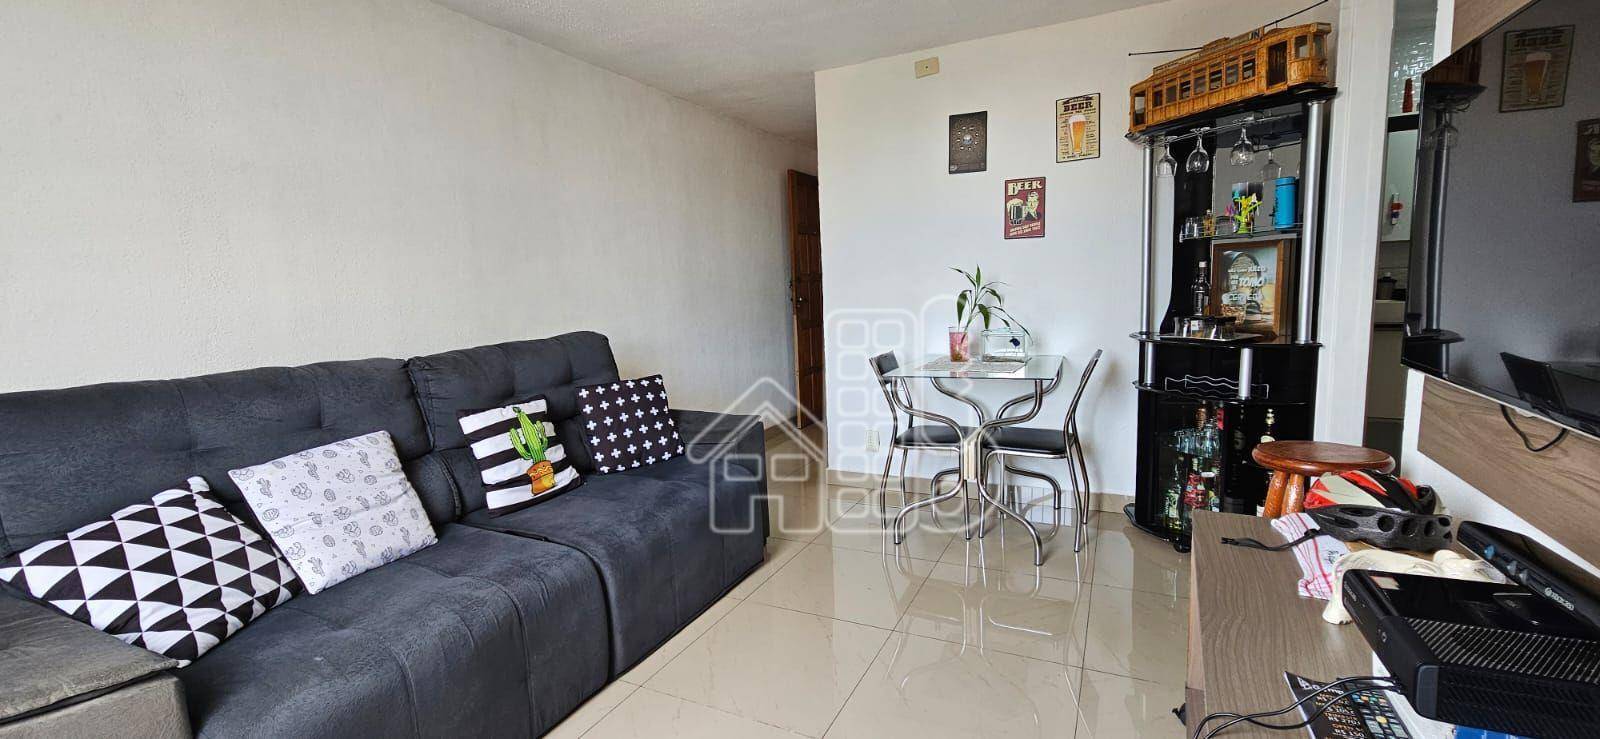 Apartamento com 3 quartos à venda, 60 m² por R$ 330.000 - Fátima - Niterói/RJ